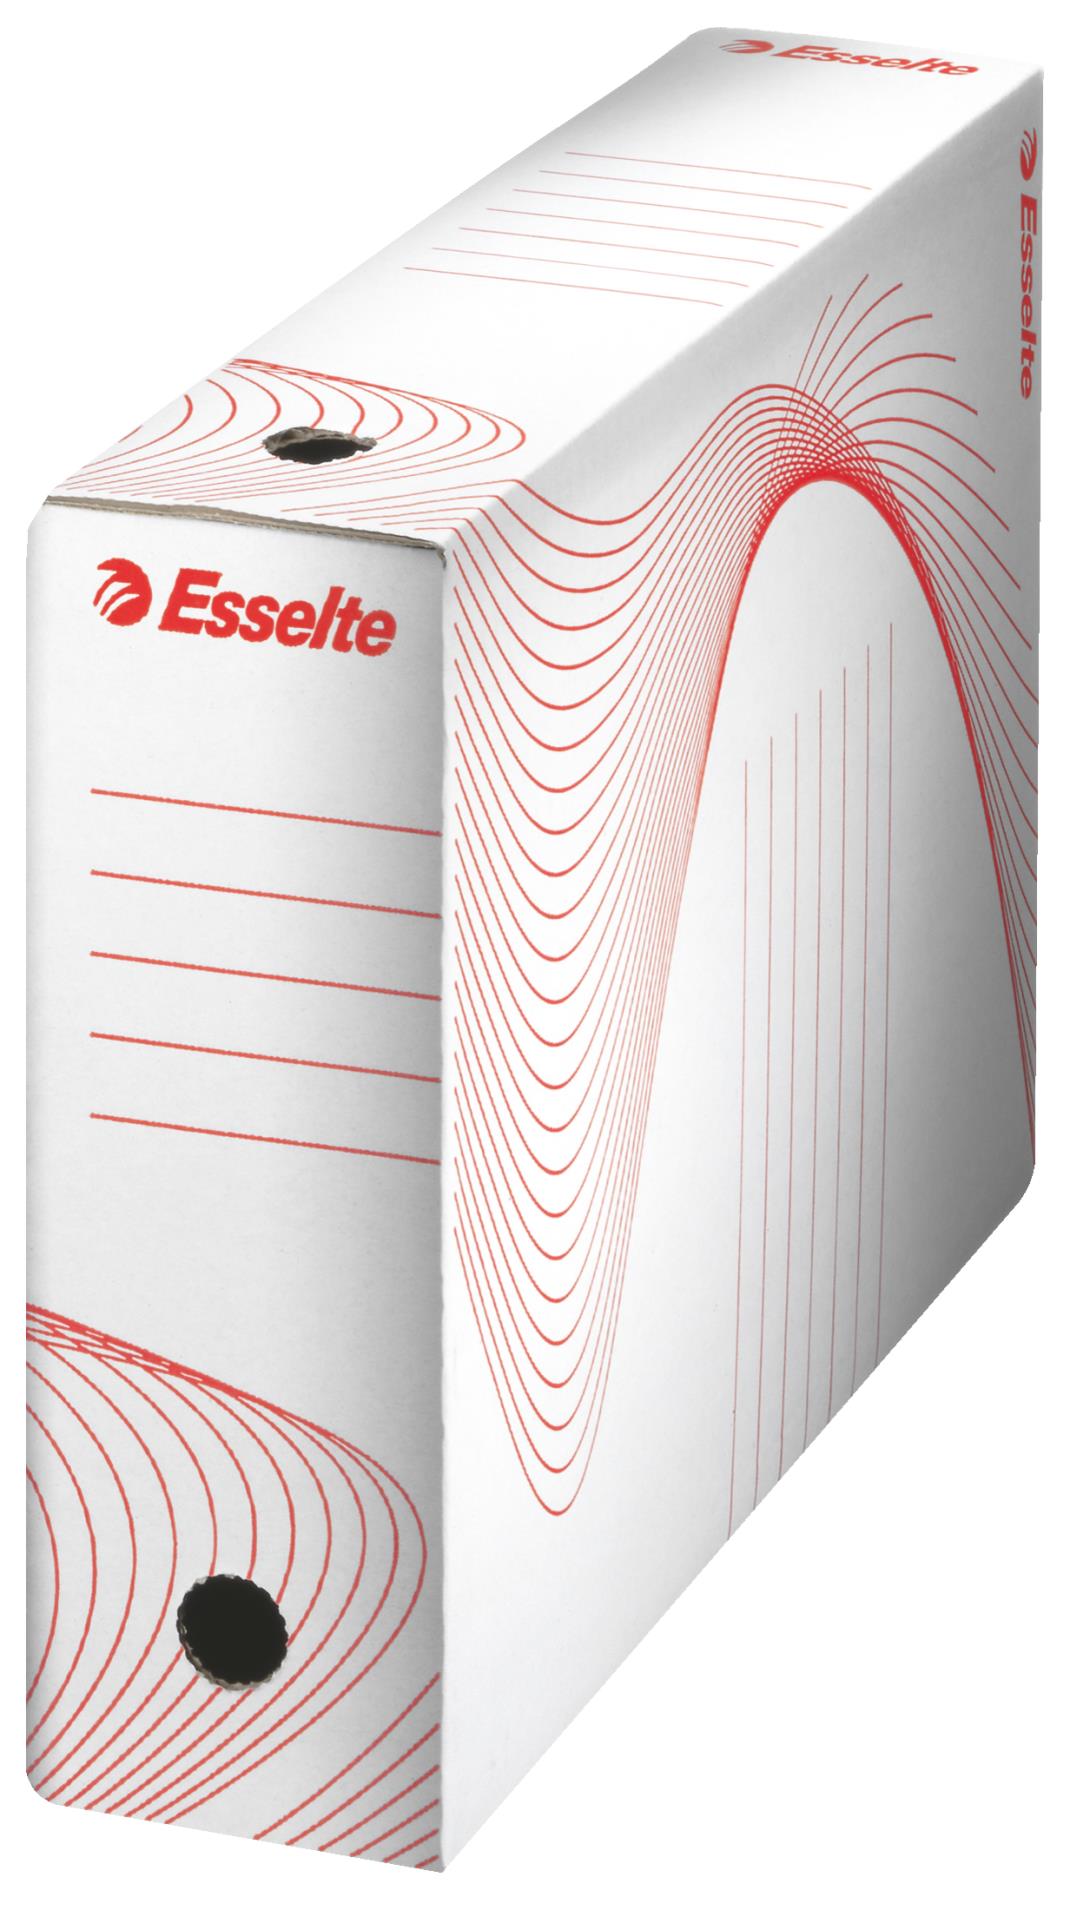 Archivační krabice Esselte - 10,0 x 24,5 x 34,5 cm, bílá